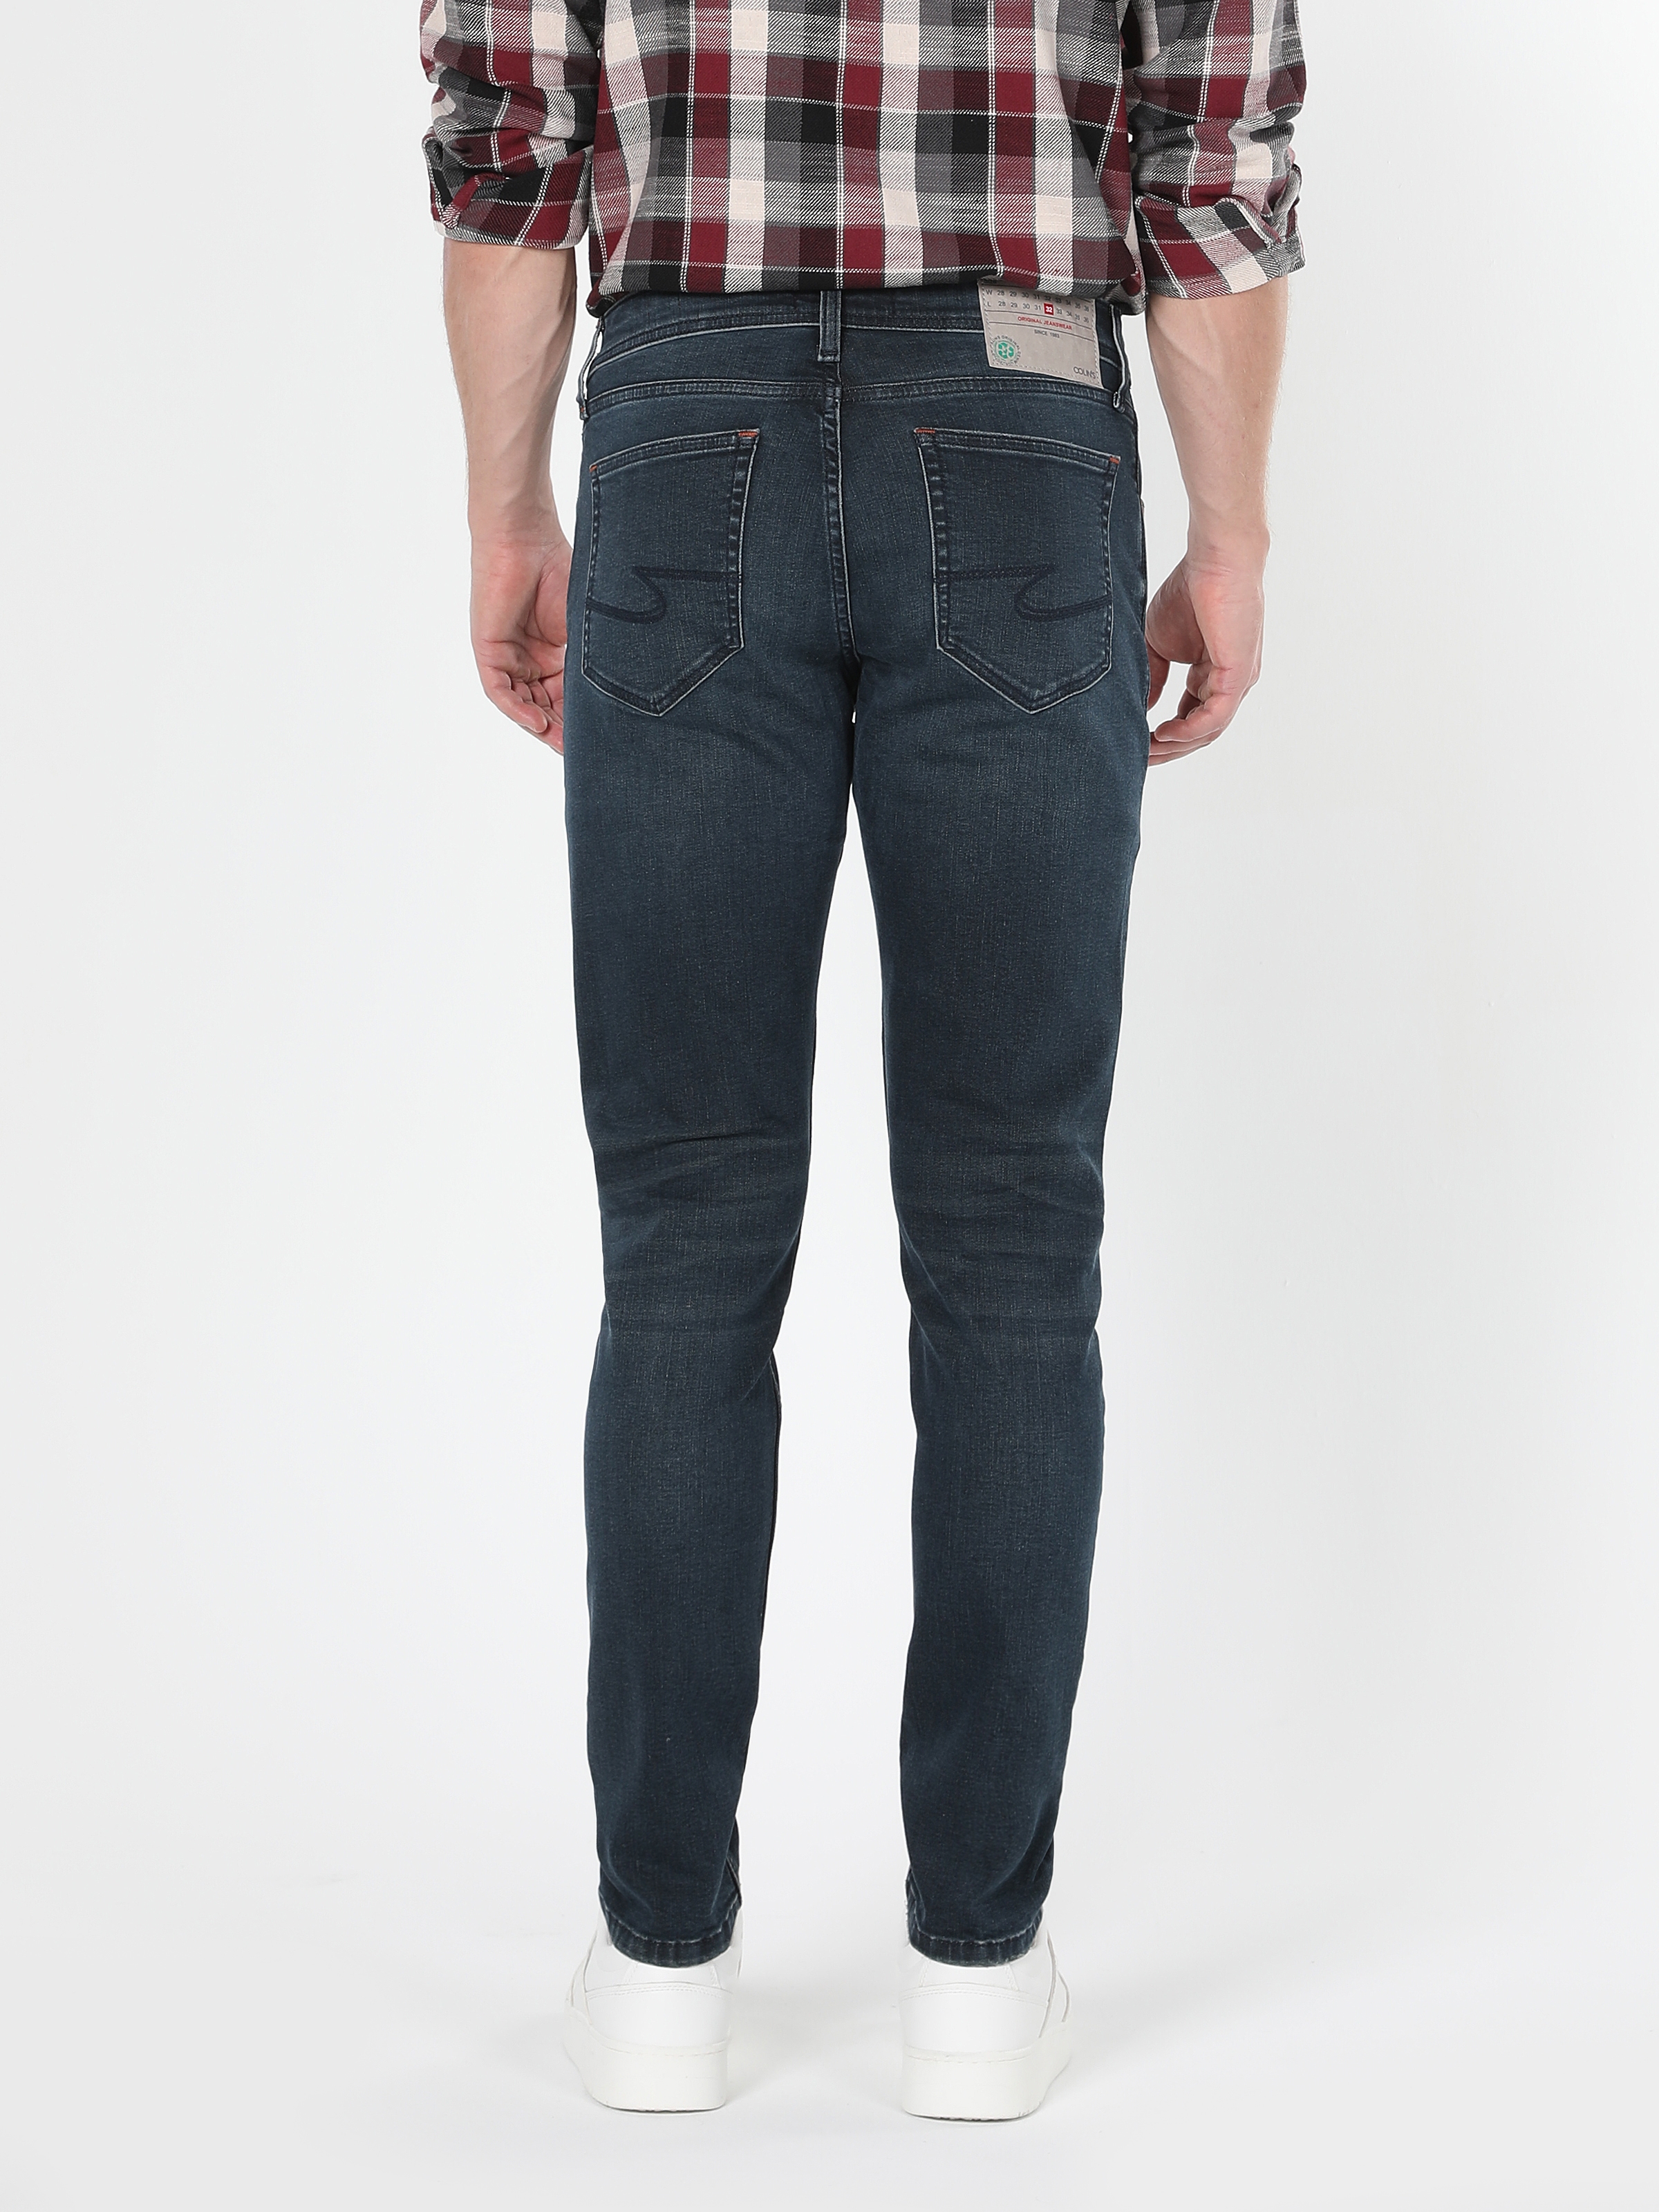 Afișați detalii pentru Pantaloni De Barbati Albastru inchis Slim Fit 041 DANNY CL1061519